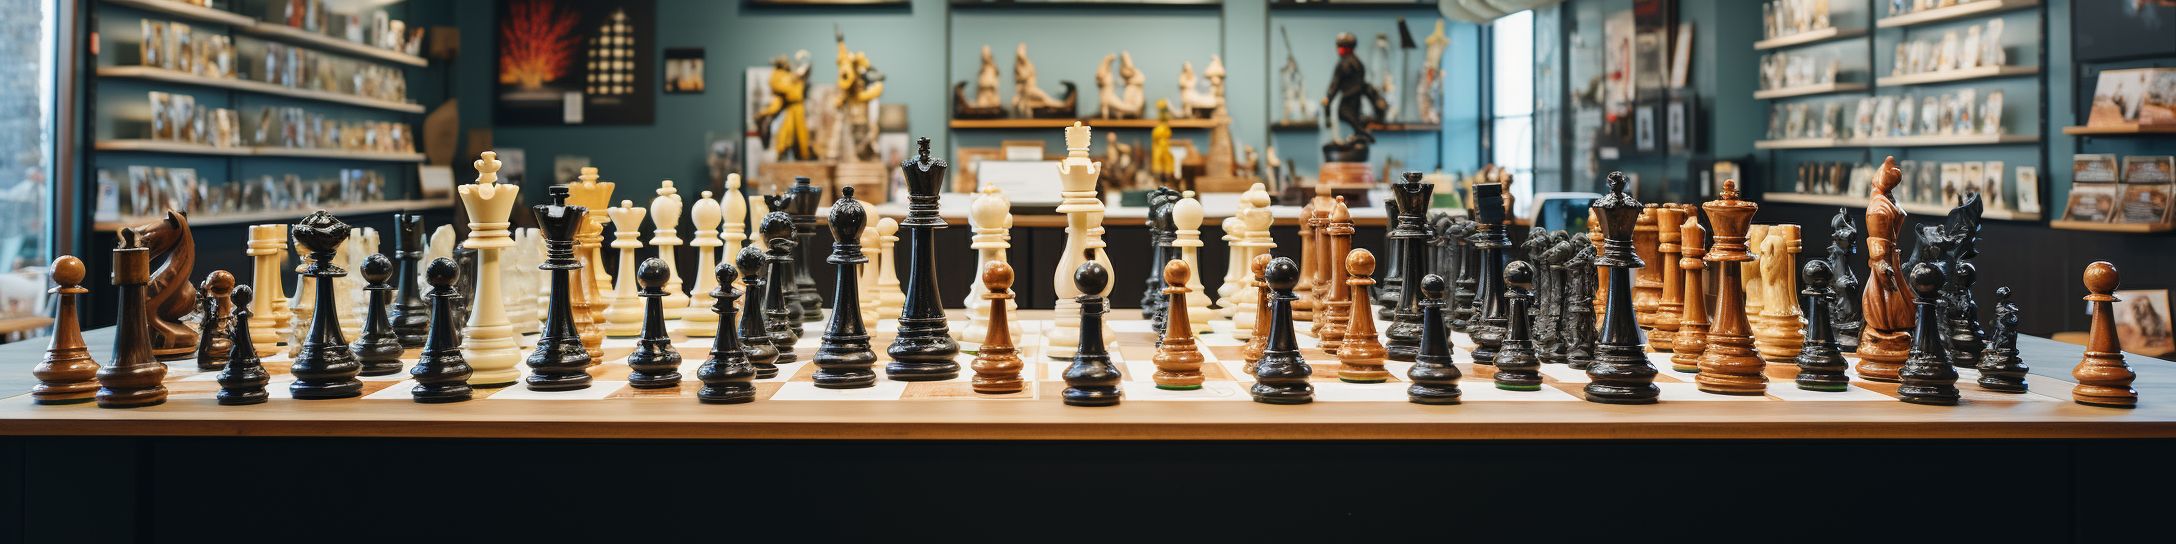 Les différentes tailles de jeux d'échecs disponibles sur le marché